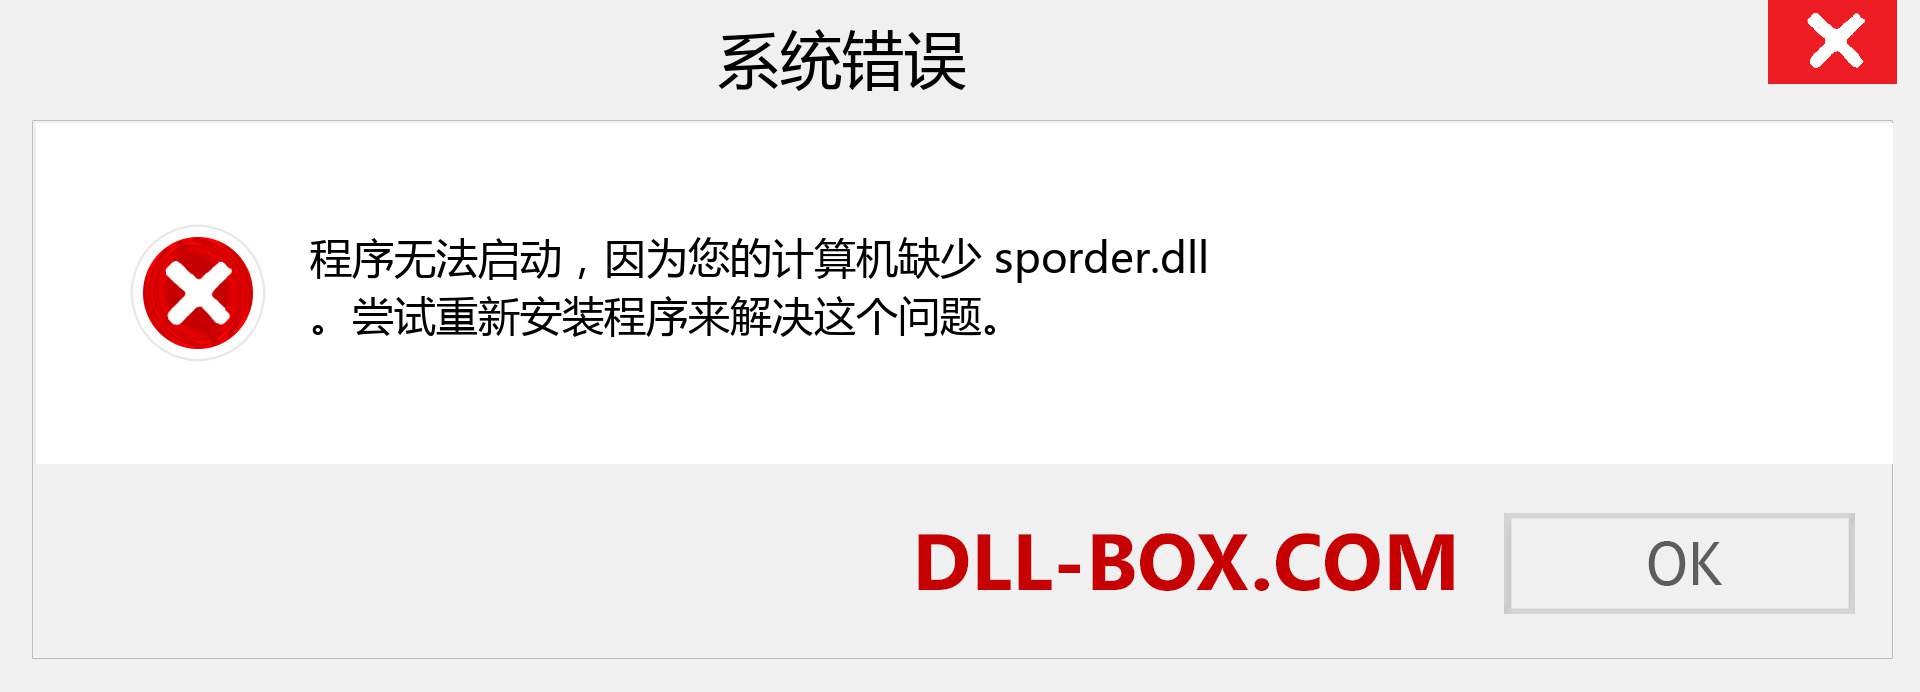 sporder.dll 文件丢失？。 适用于 Windows 7、8、10 的下载 - 修复 Windows、照片、图像上的 sporder dll 丢失错误